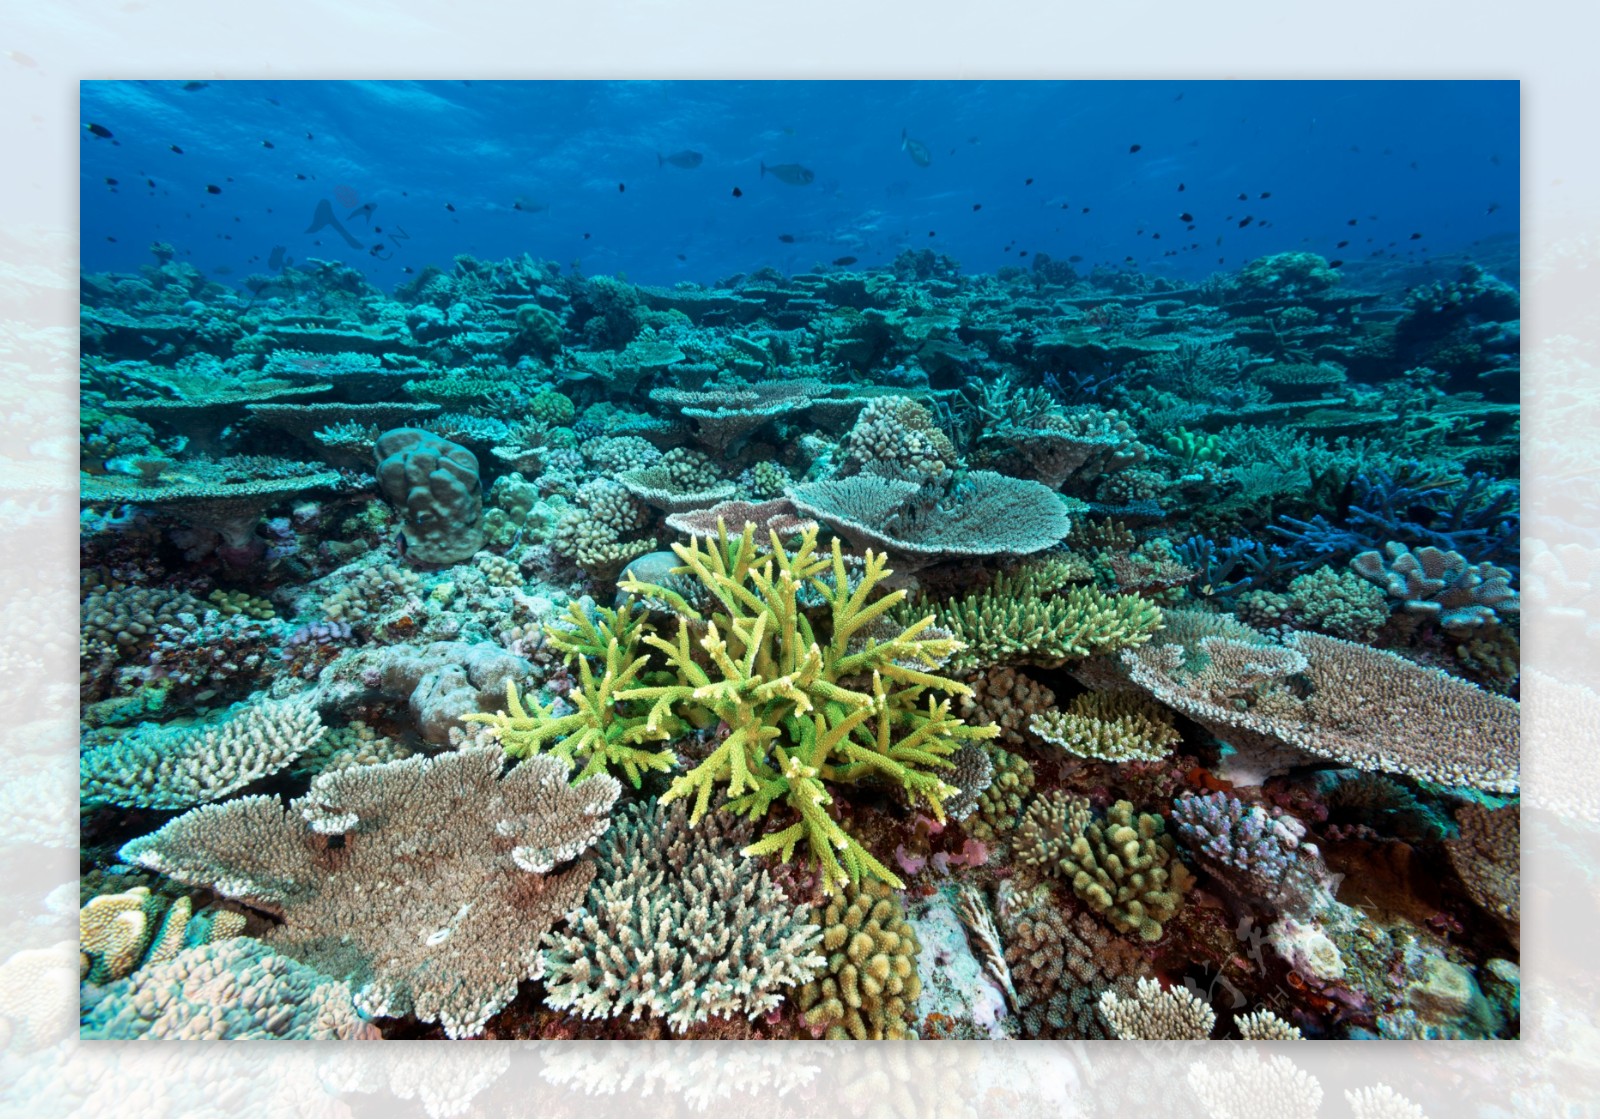 珊瑚大堡礁